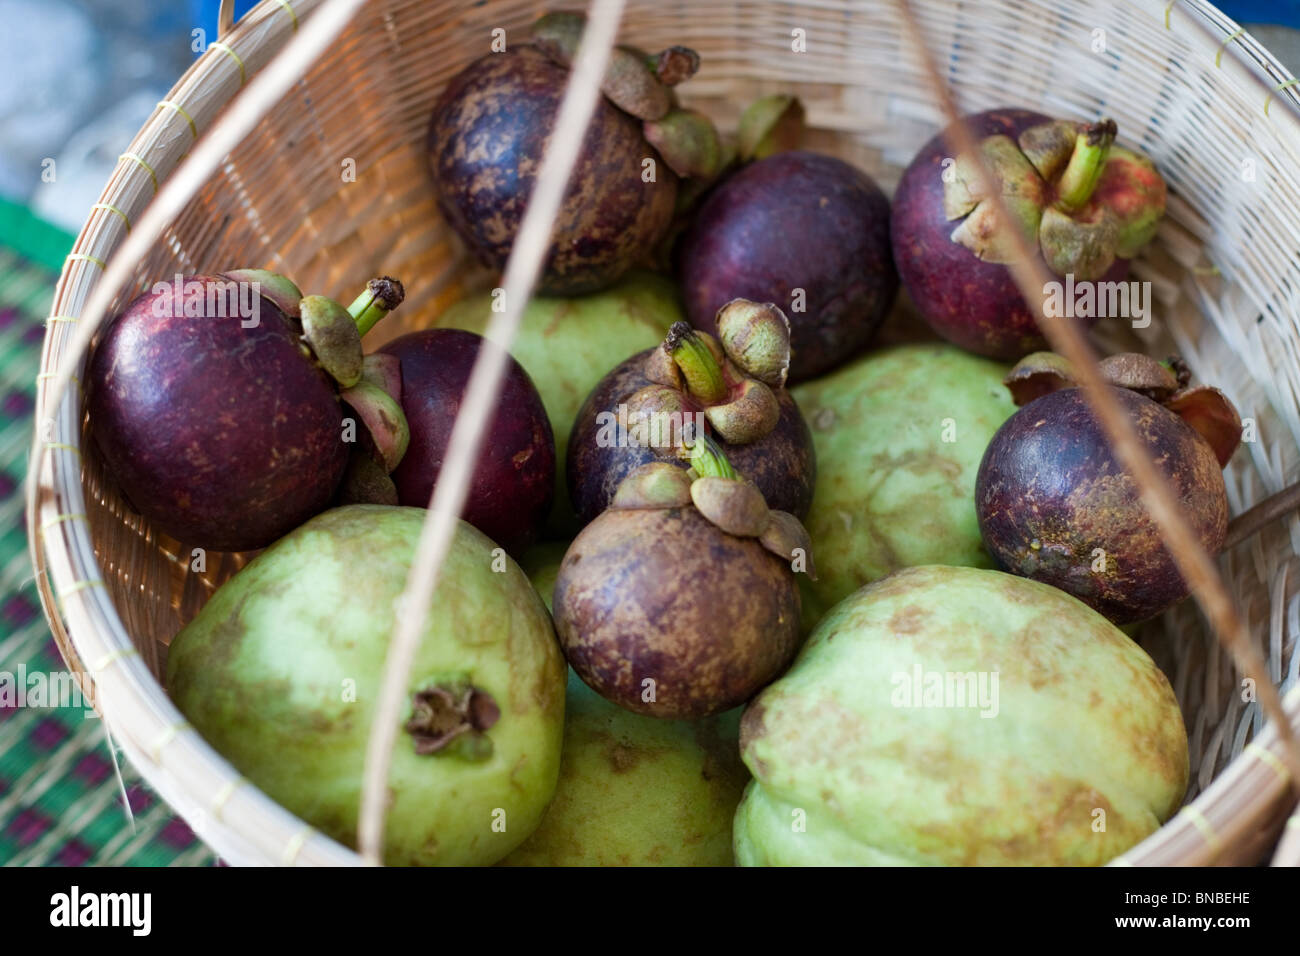 Mangostanfrüchte und andere tropische Früchte in einem Korb, Thailand Stockfoto